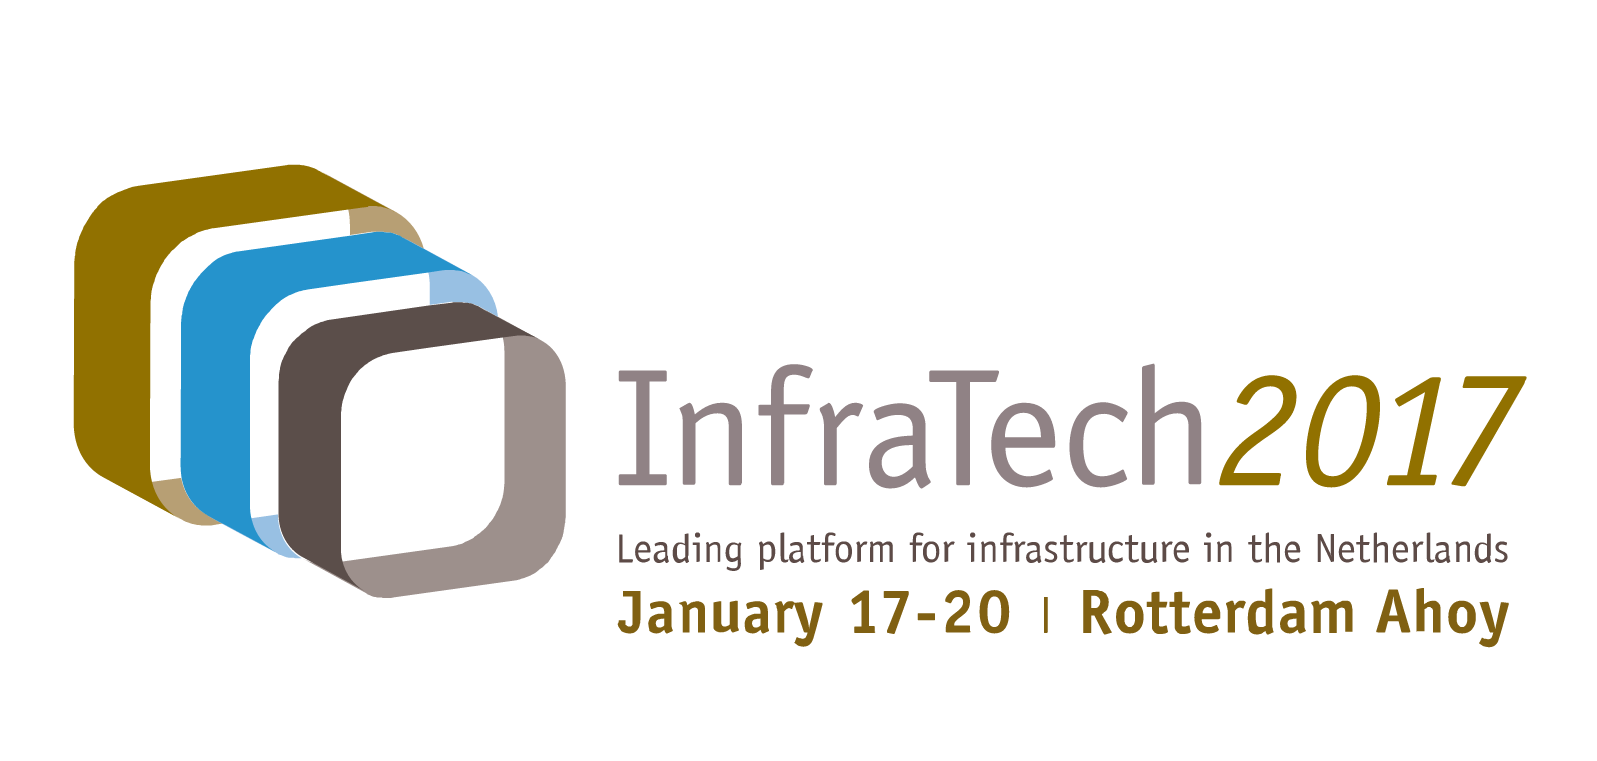 InfraTech 2017 - Rotterdam / January 17-20, 2017